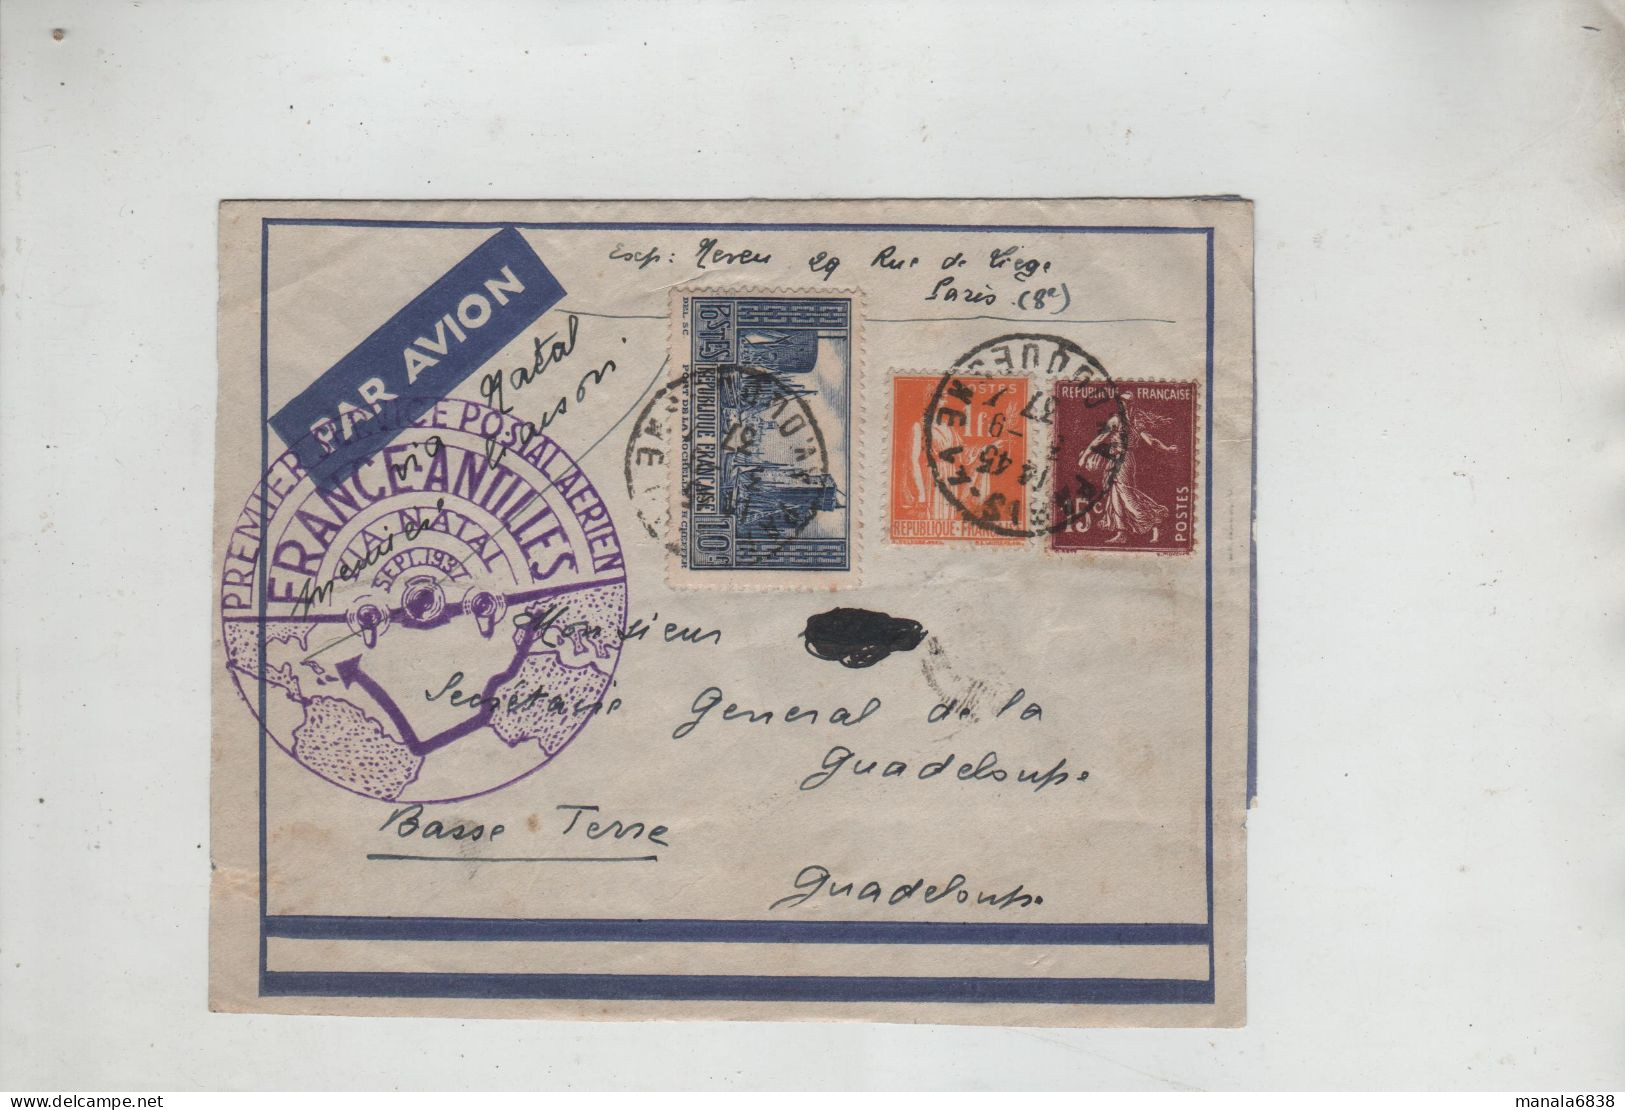 Premier Service Postal Aérien France Antilles 1937 Neveu Paris Secrétaire Général De La Guadeloupe Basse Terre - Non Classés